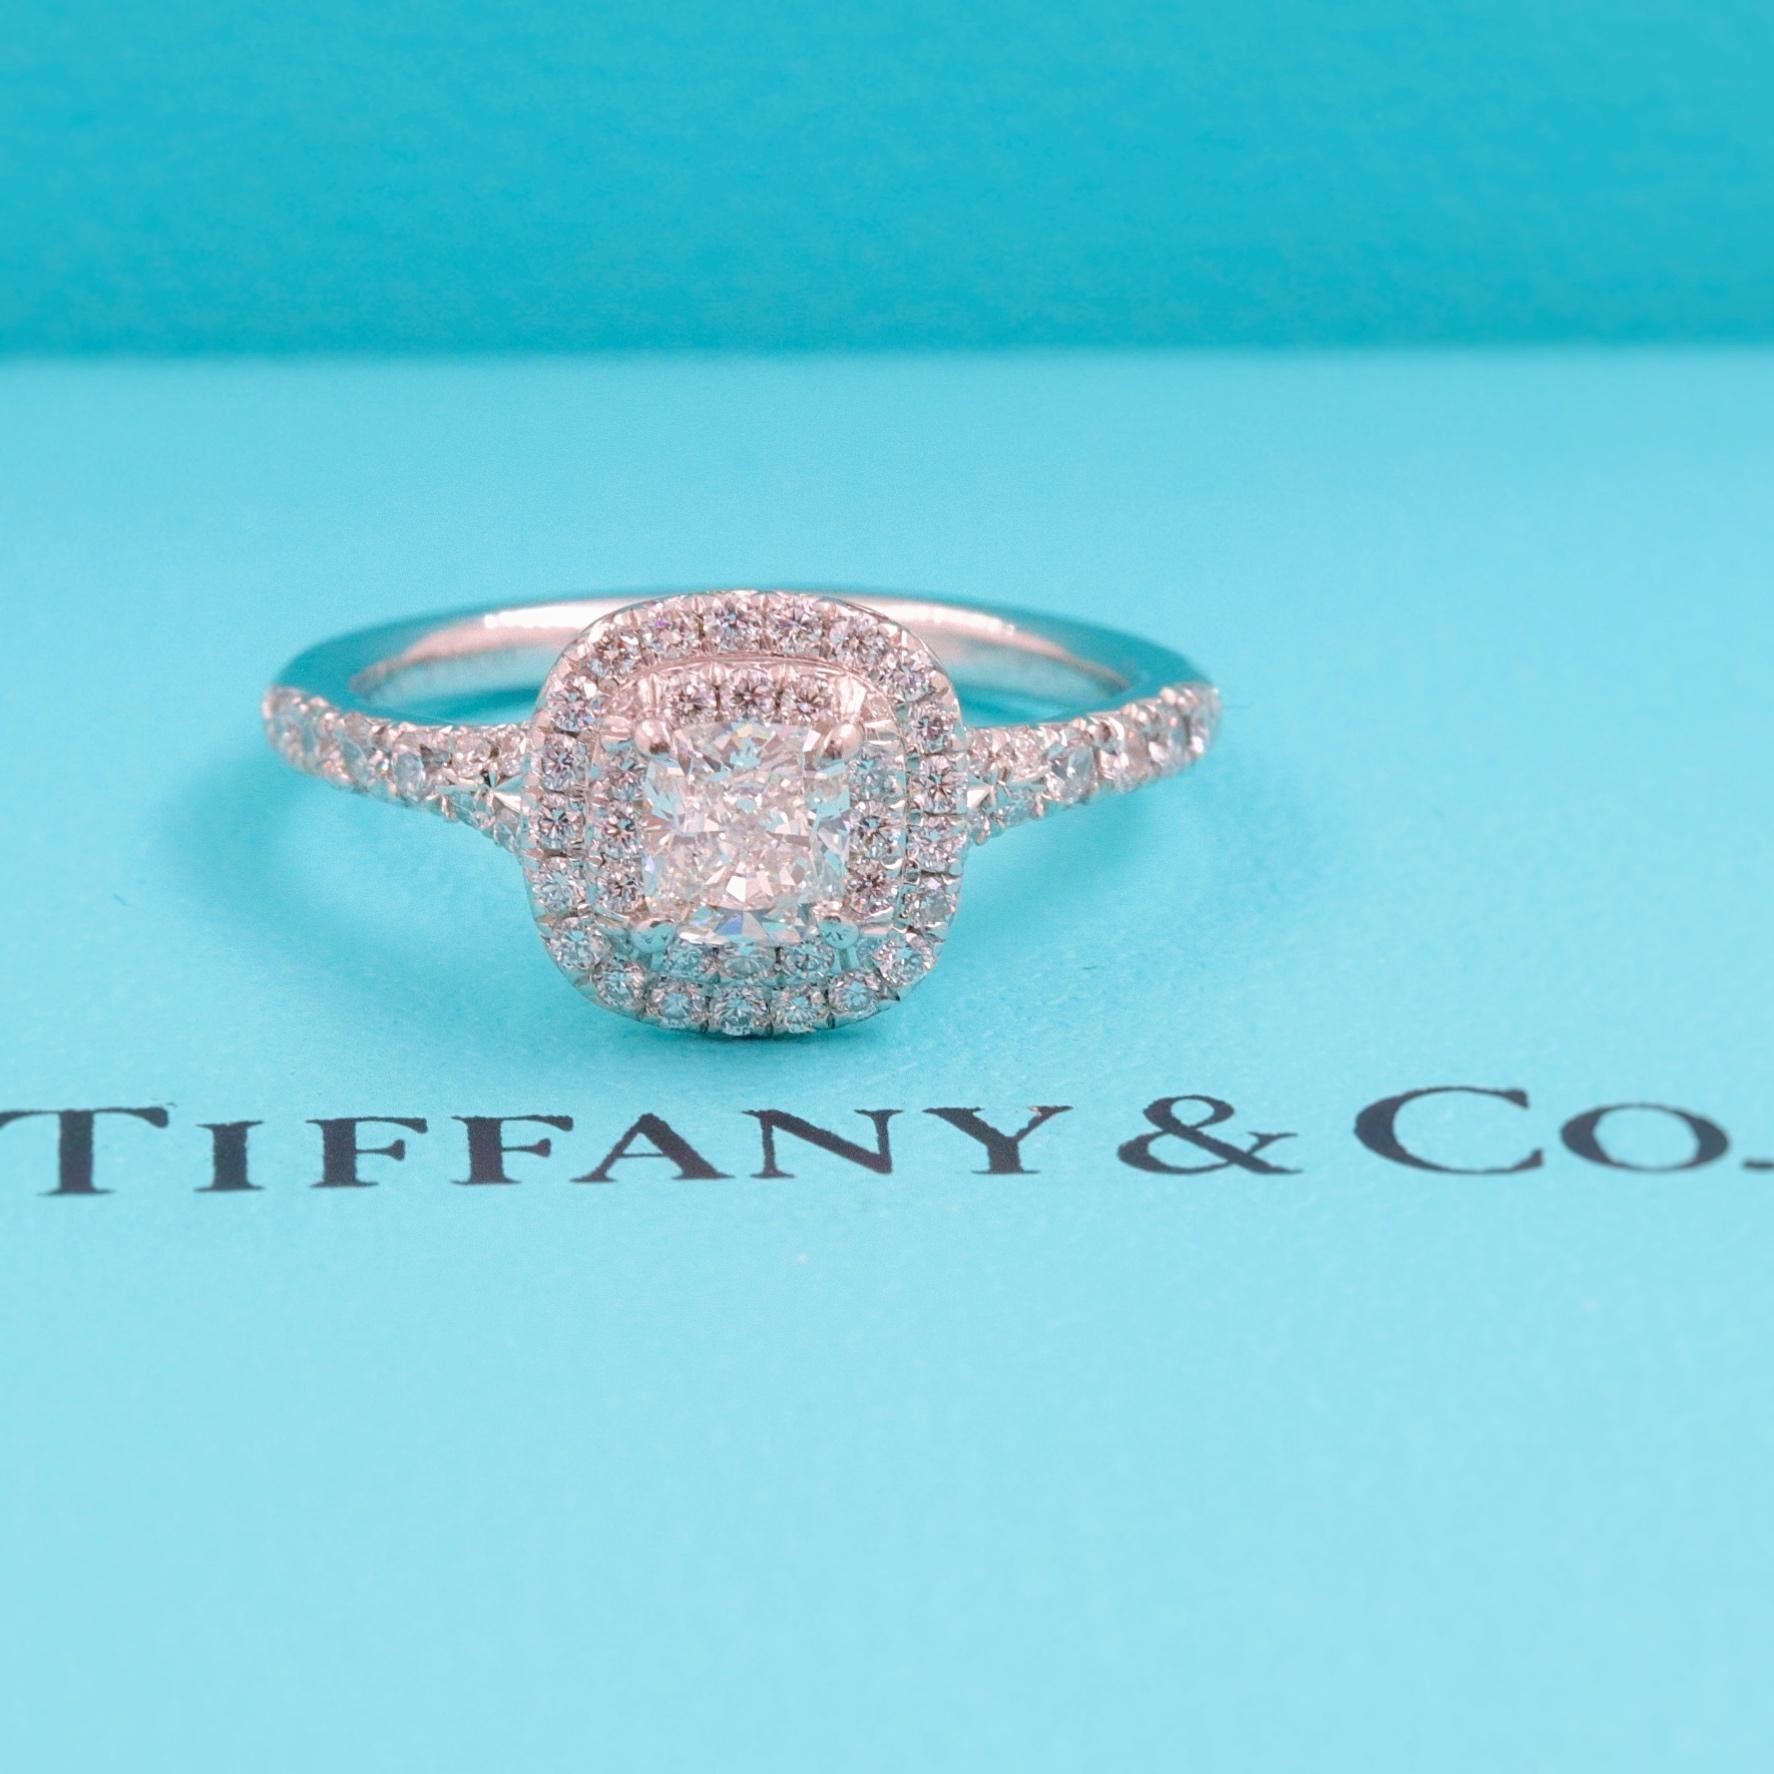 Tiffany & Co. Soleste Round Diamond 0.64 Carat Ring in Platinum Papers Damen